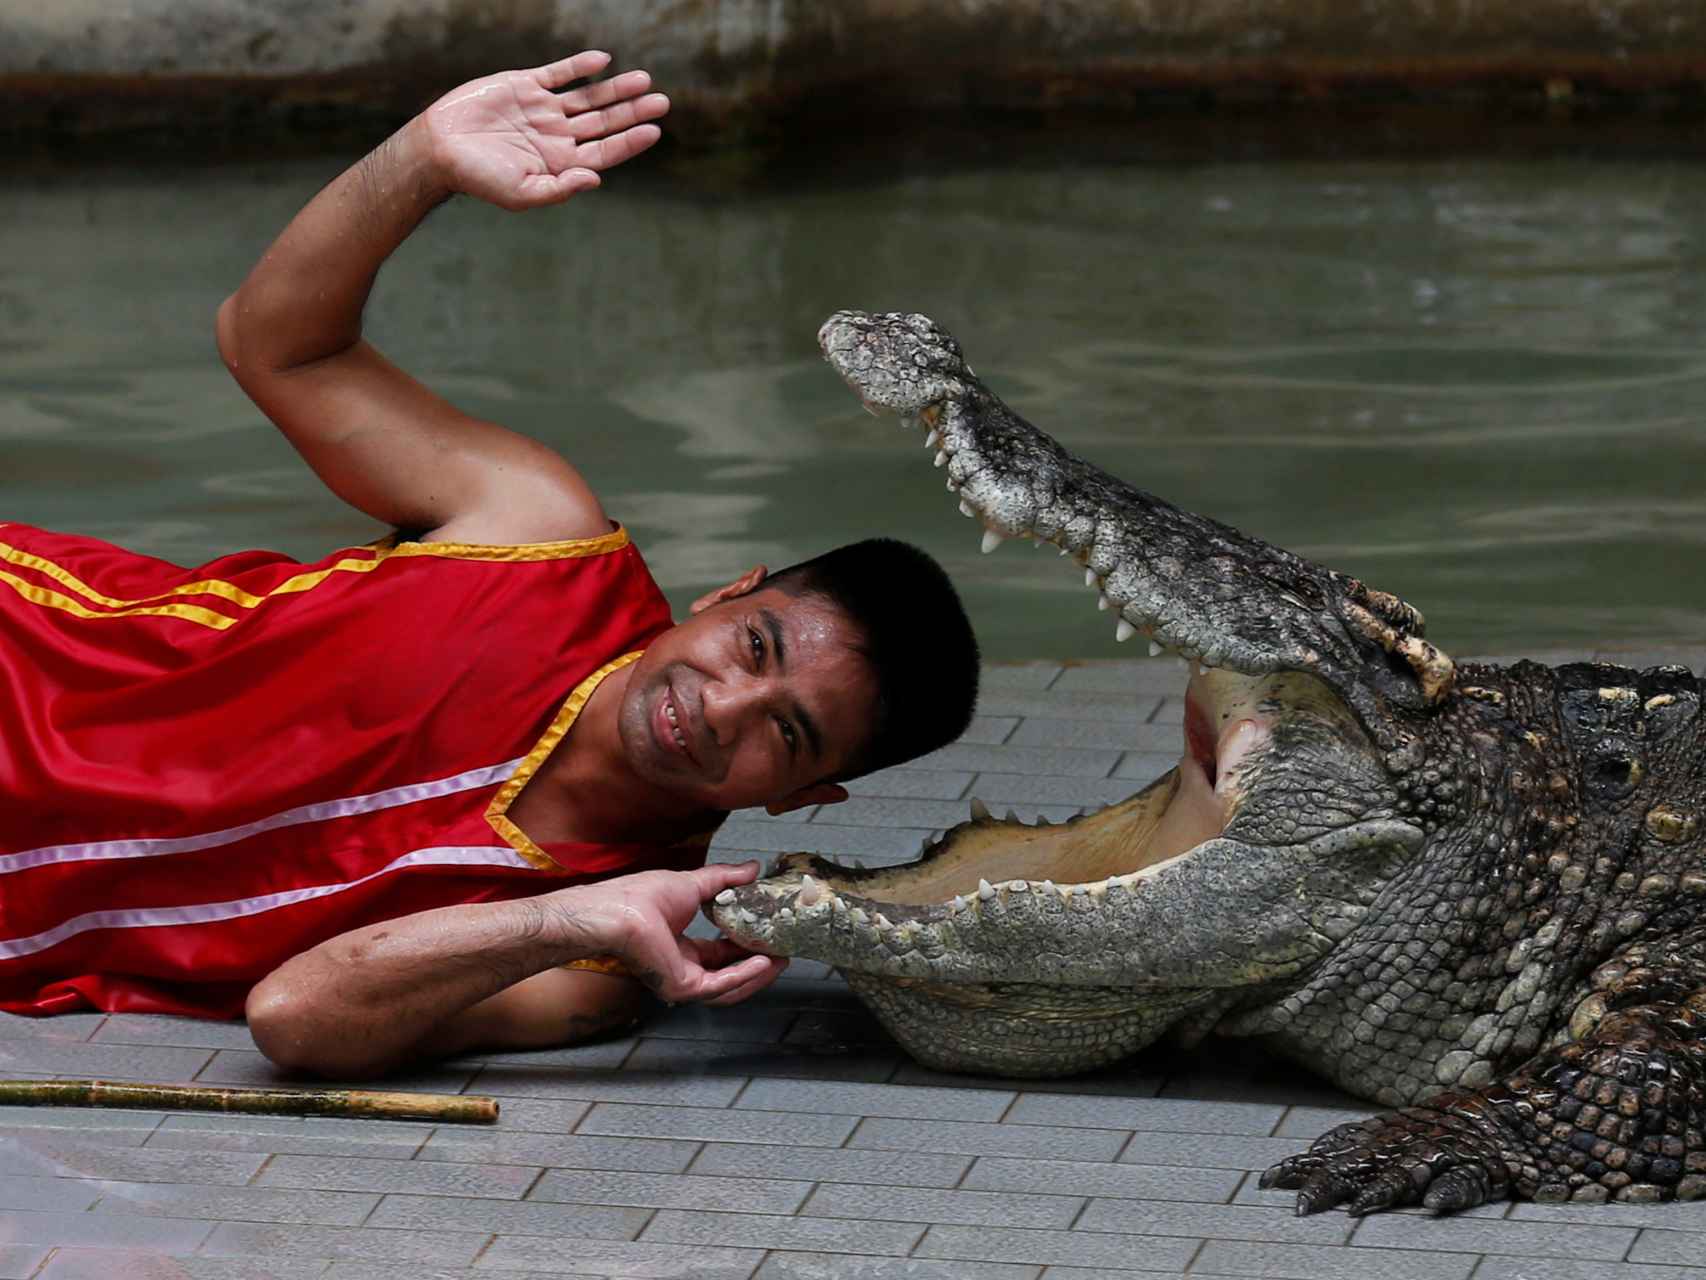 No, el Krokodil no ha llegado a España